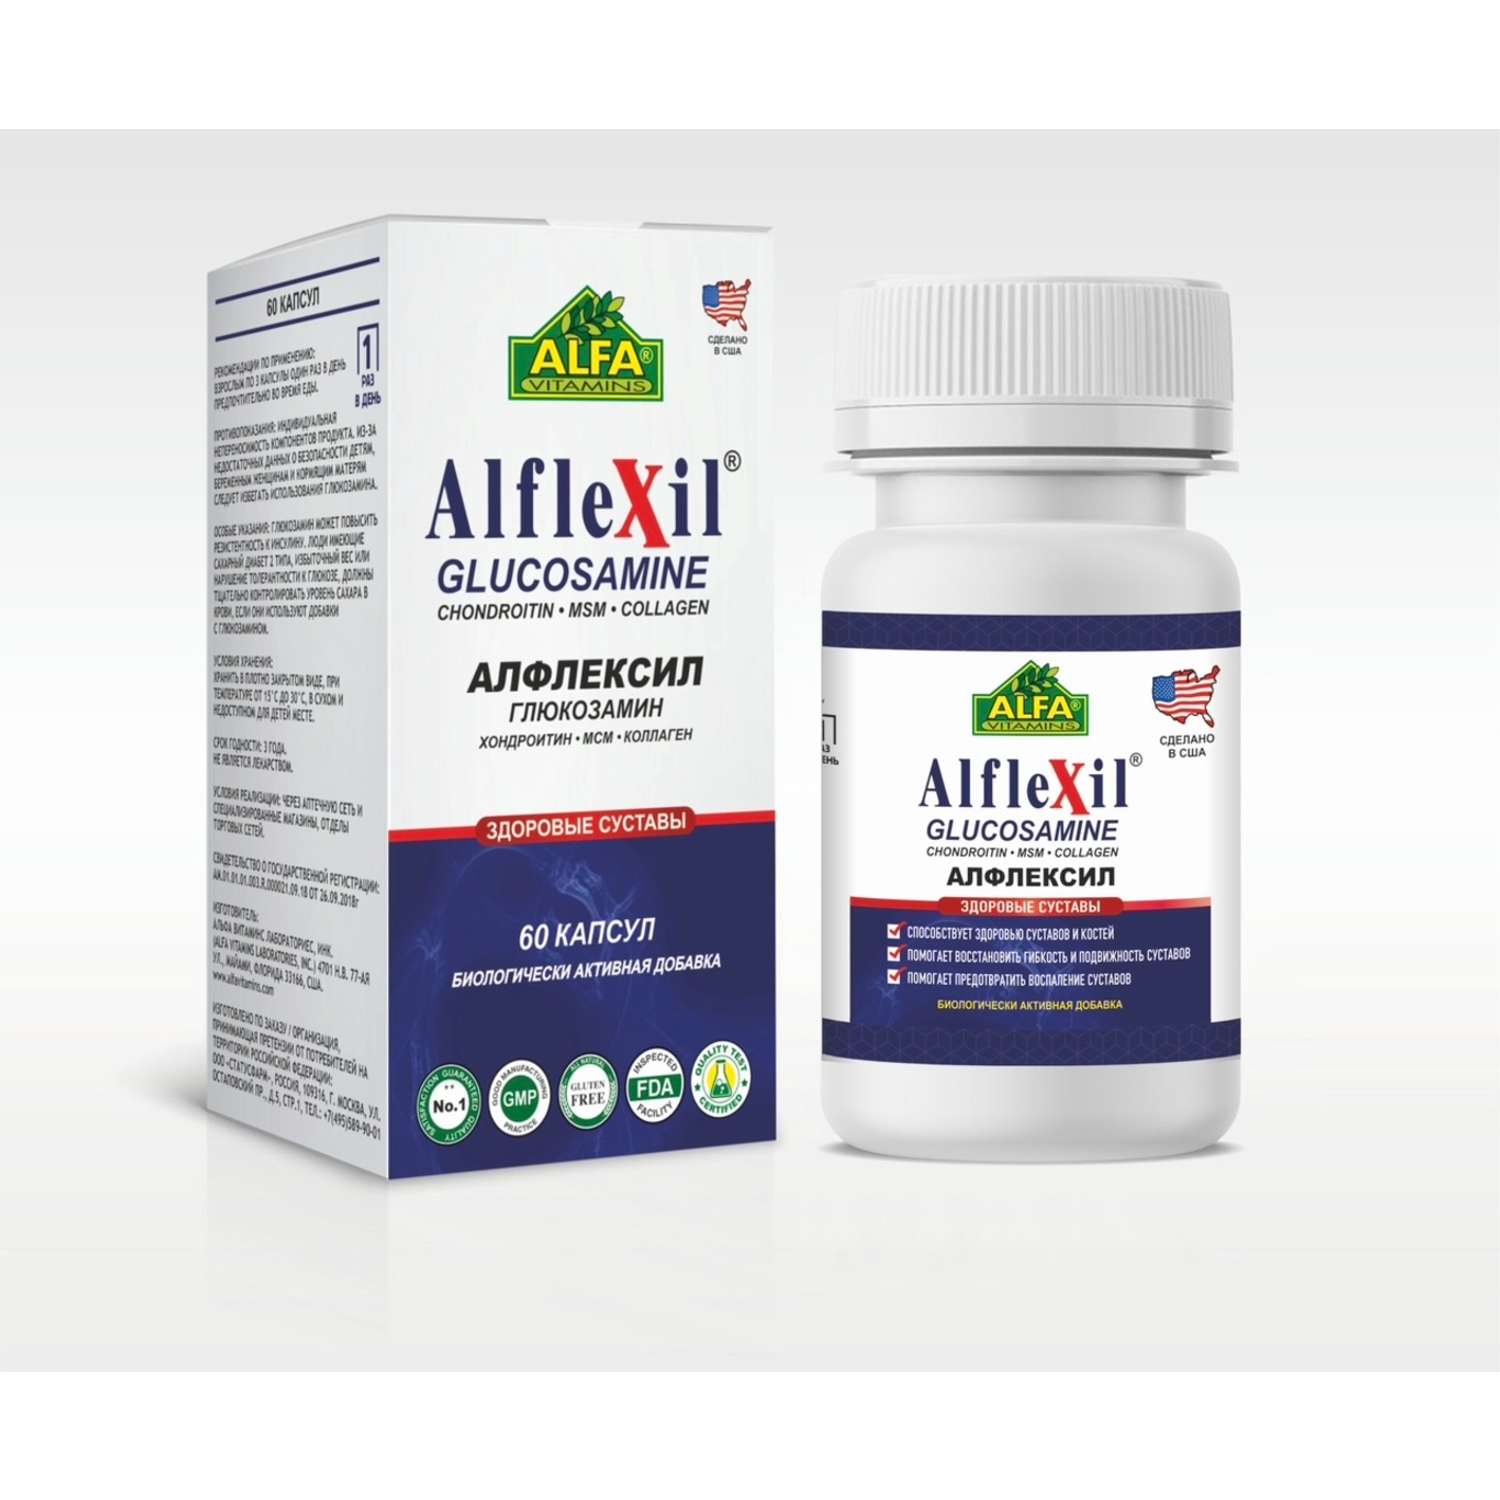 БАД Alfa Vitamins Альфлексил Глюкозамин Хондроитин Коллаген МСМ 60 капсул США - фото 1